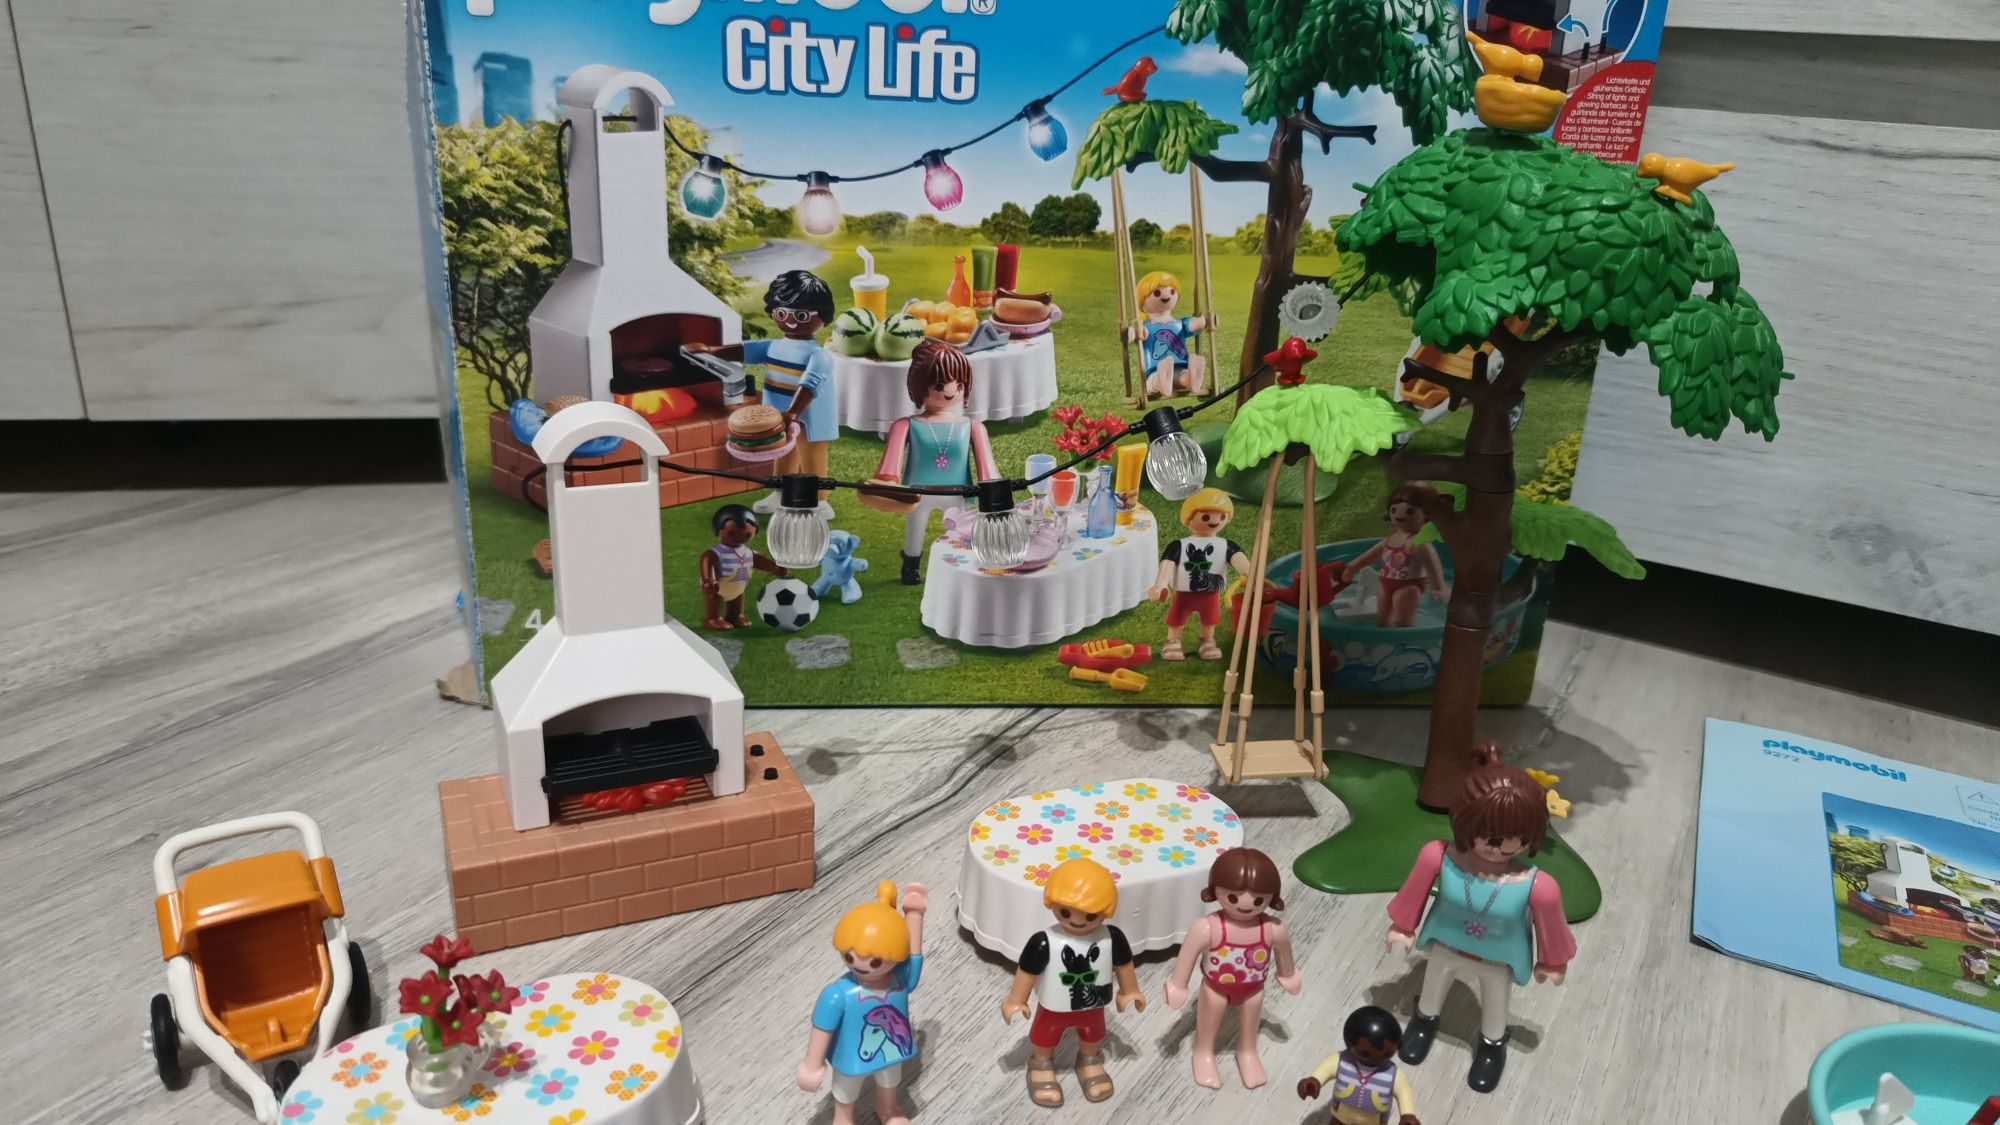 Playmobil 9272 GRATIS  wysyłka Przyjęcie w ogrodzie dzieci niemowlak